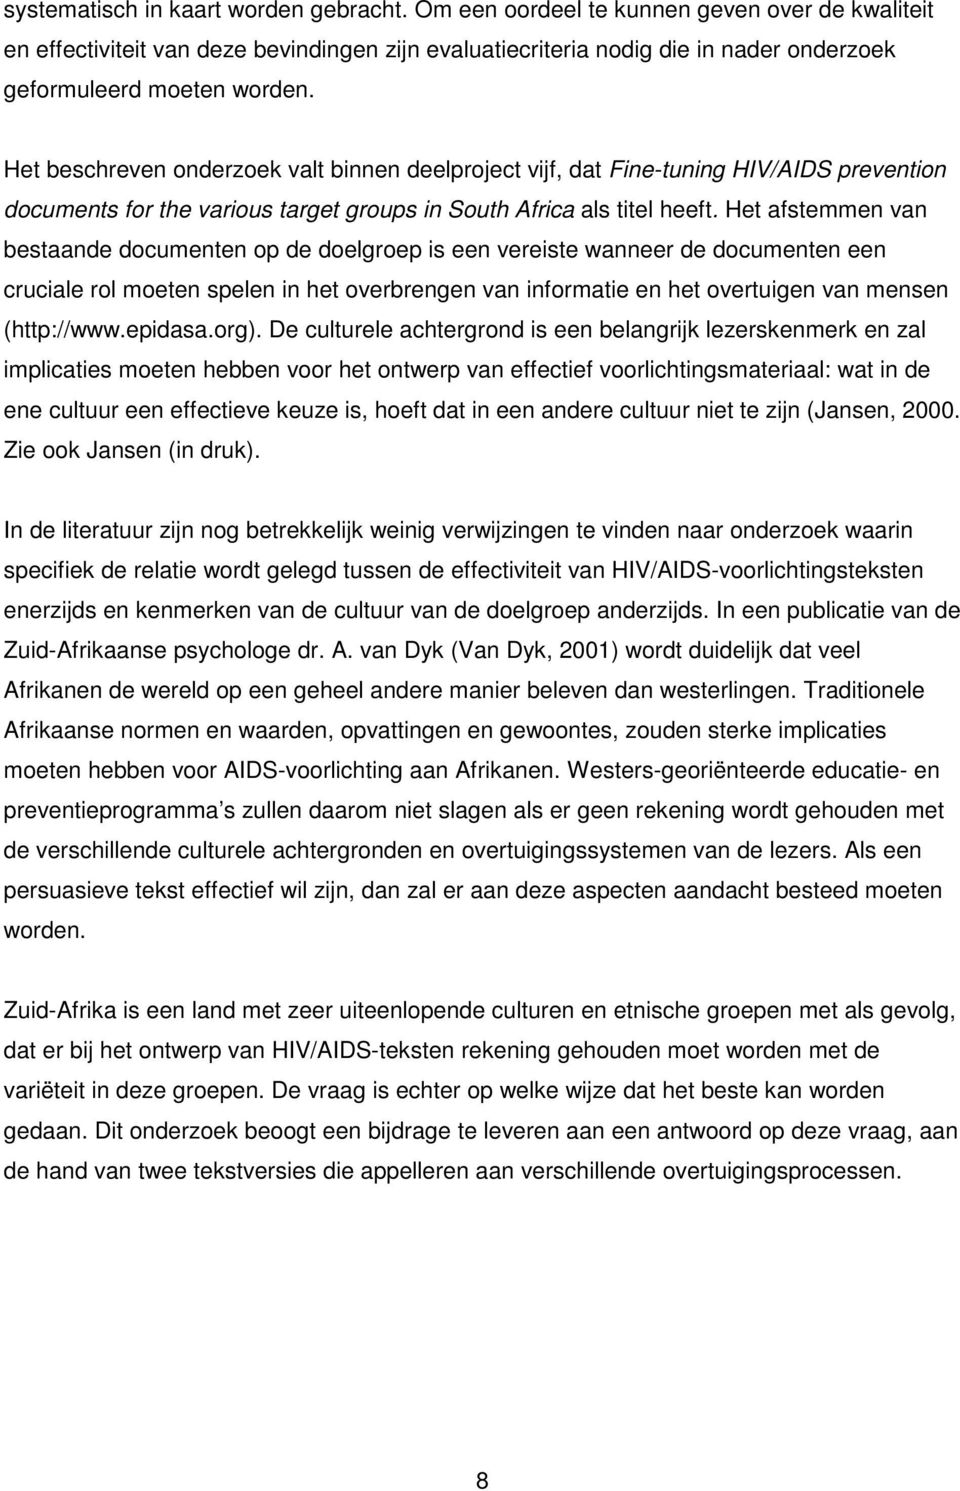 Het beschreven onderzoek valt binnen deelproject vijf, dat Fine-tuning HIV/AIDS prevention documents for the various target groups in South Africa als titel heeft.